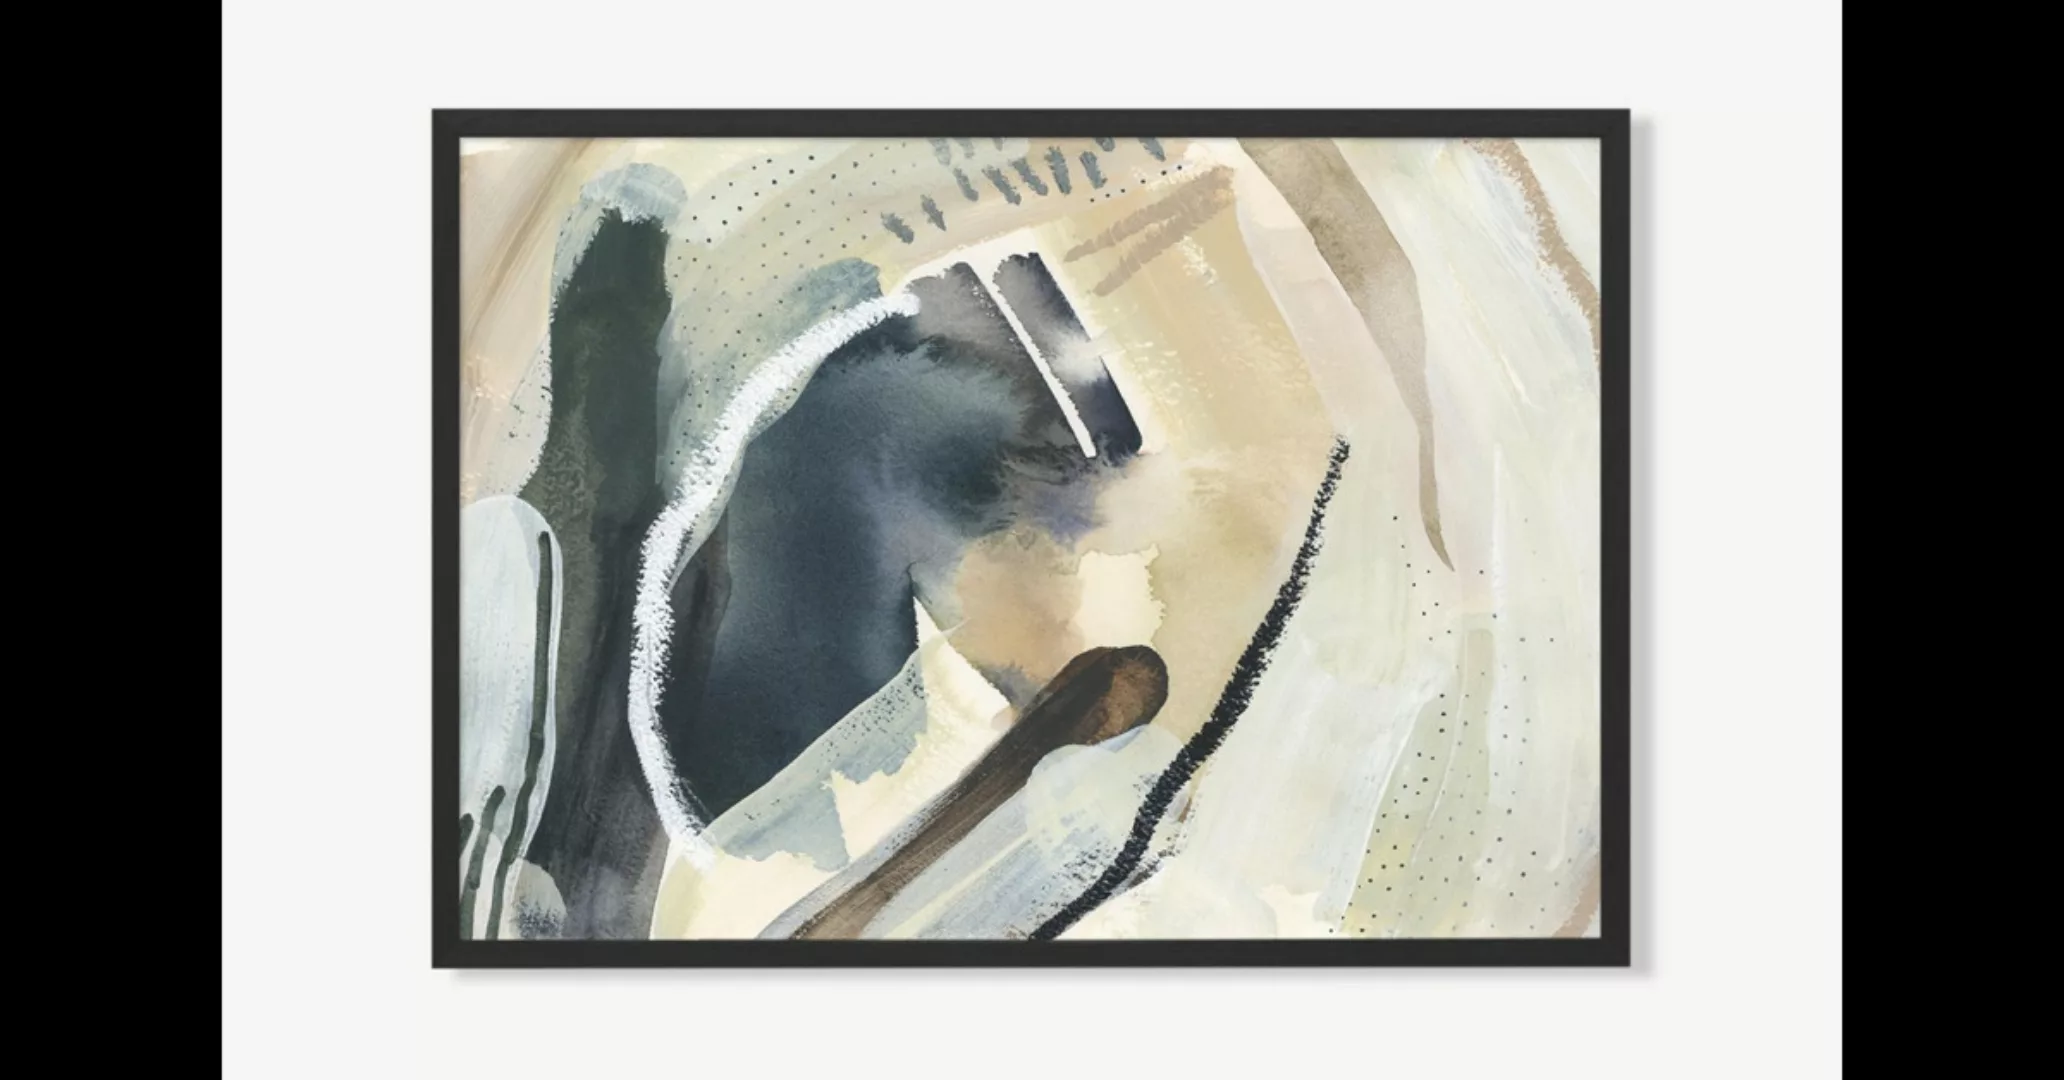 Windy Waters gerahmter Kunstdruck von Jetty Home (70 x 100 cm) - MADE.com günstig online kaufen